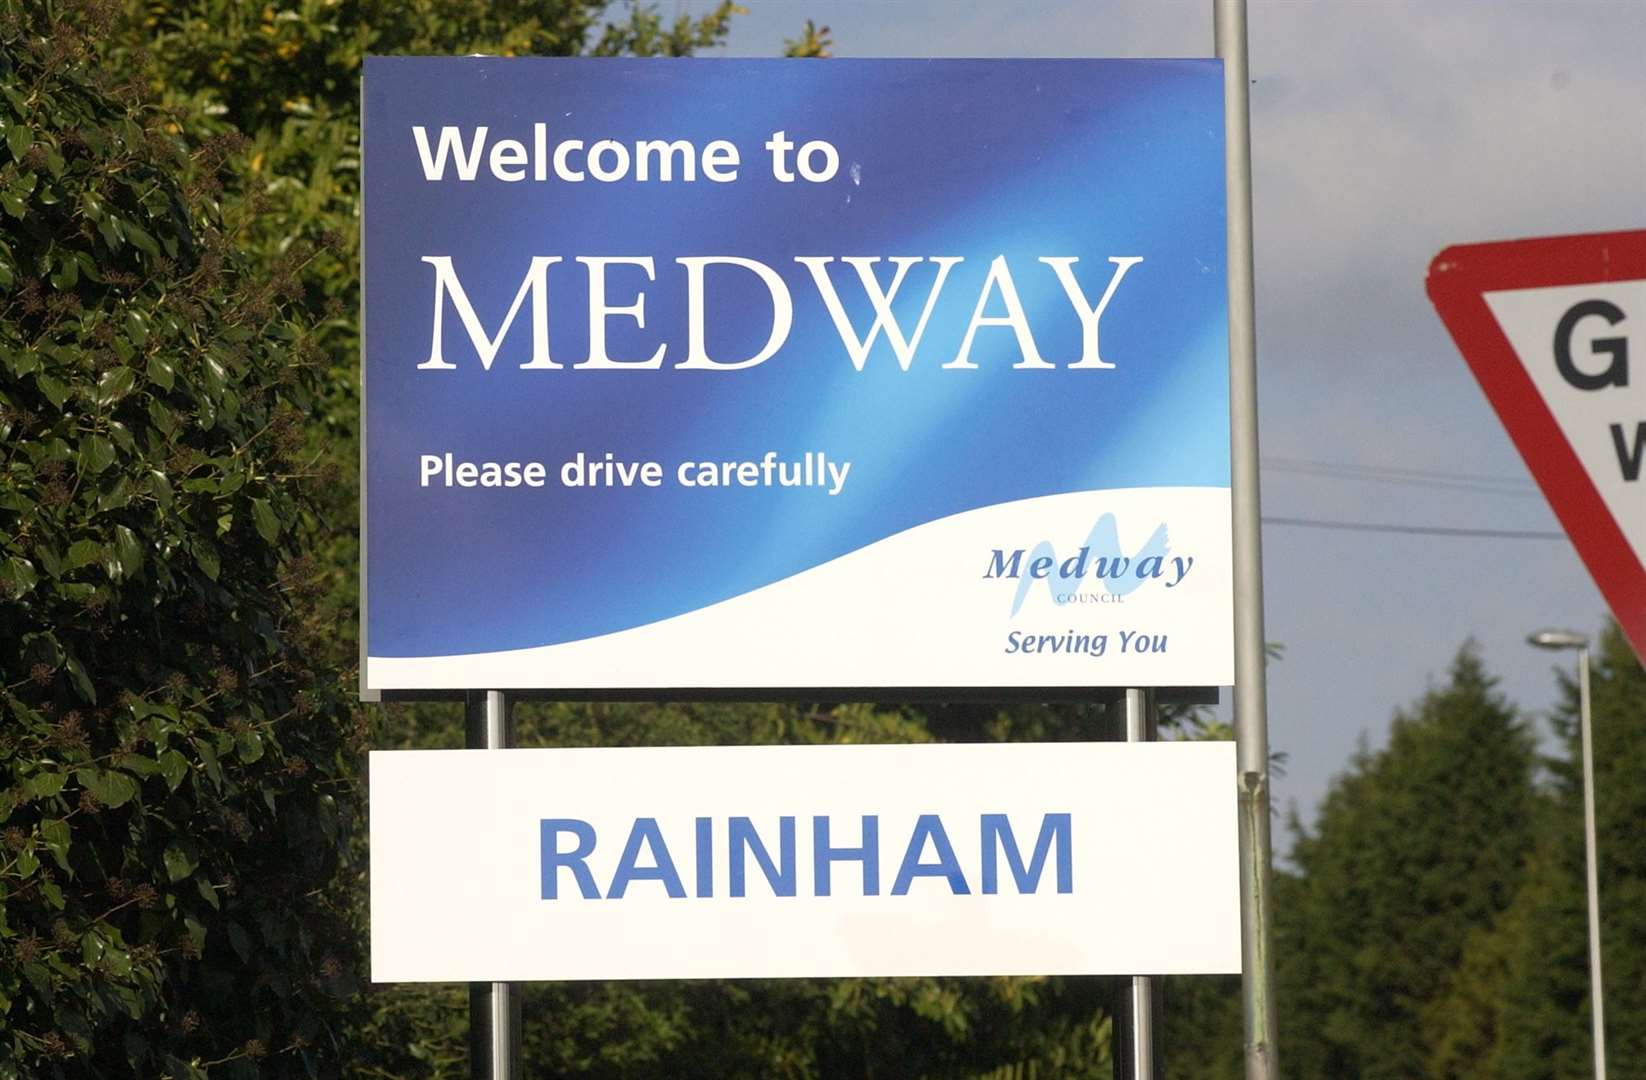 Medway last put forward a bid in 2012